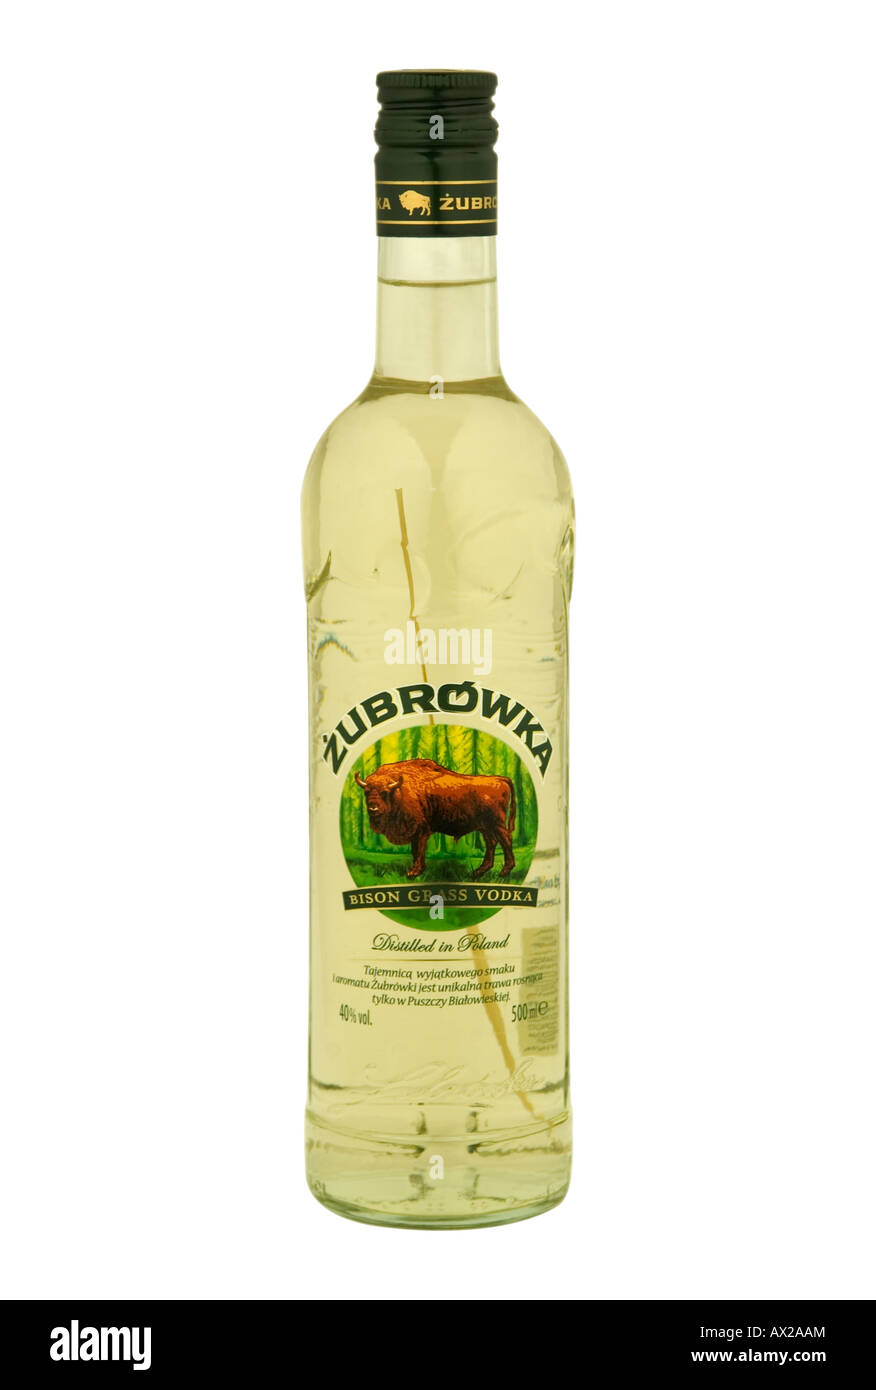 Zubrowka vodka scented with aurochs grass Stock Photo